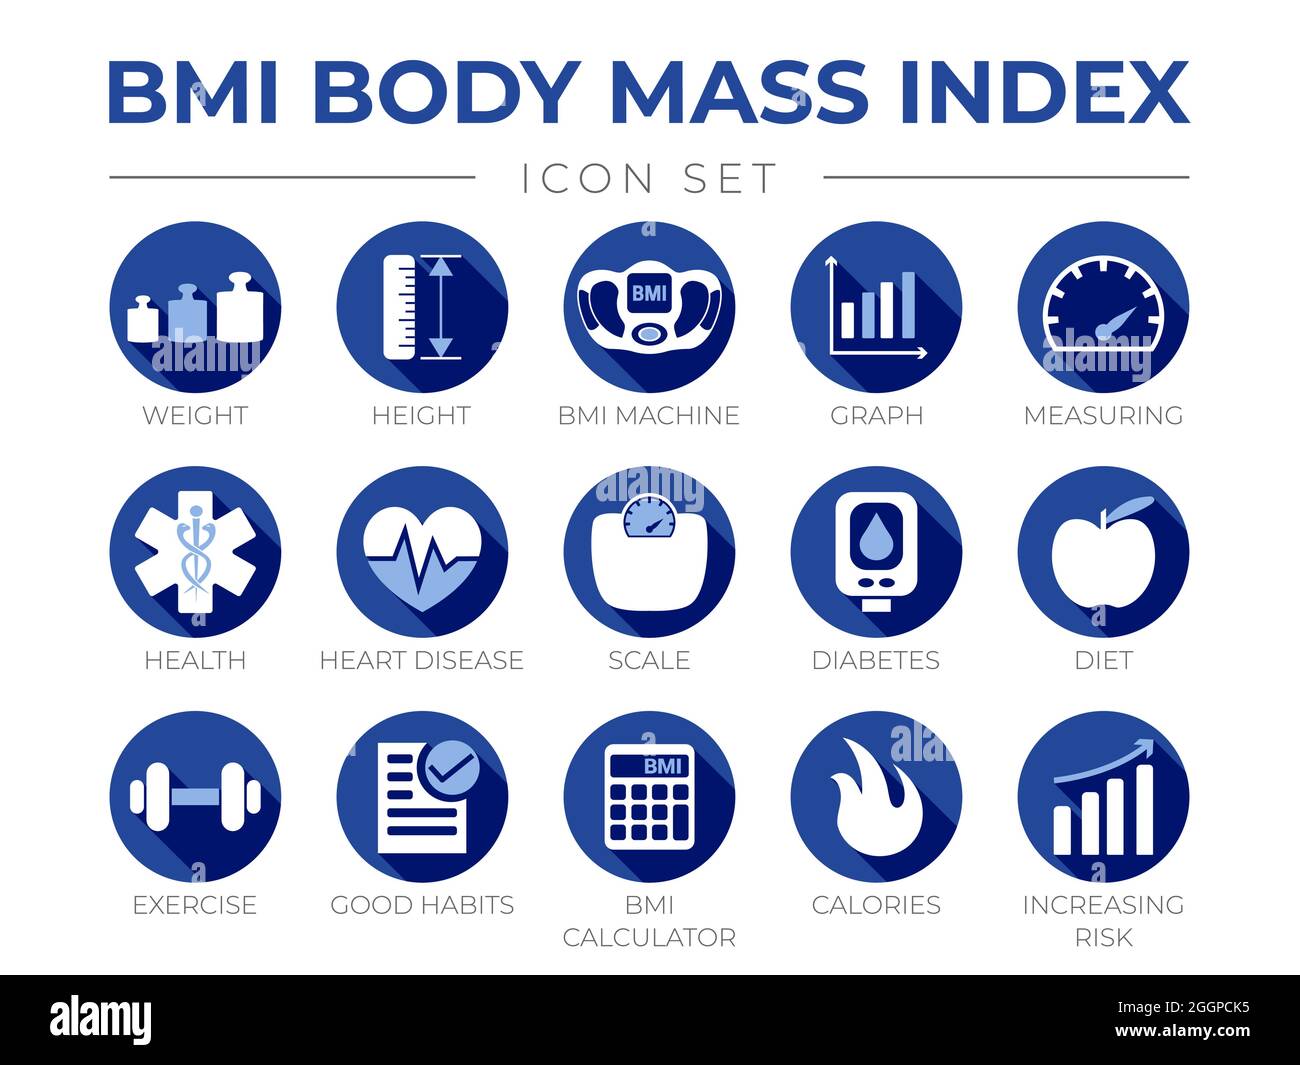 Blauer BMI Body Mass Index Rundes Symbol Satz von Gewicht, Größe, BMI-Gerät, Grafik, Messung, Gesundheit, Herzkrankheit, Skala, Diabetes, Diät, Übung, Habi Stock Vektor